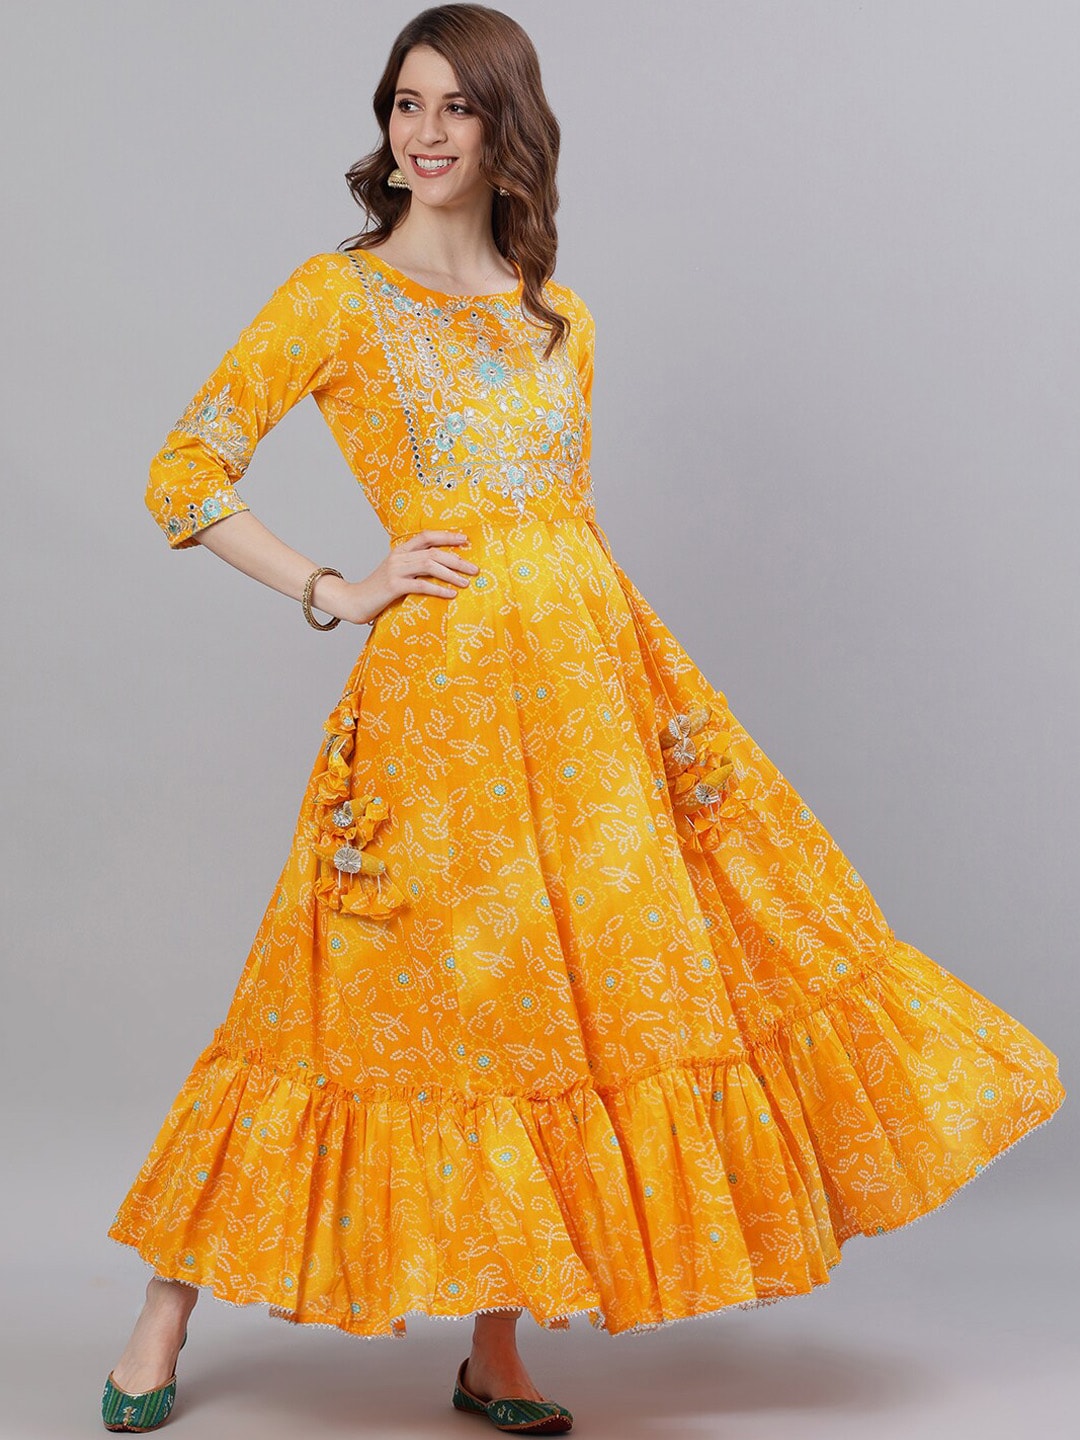 Ishin Women Yellow Bandhani Printed Maxi Dress Price in India